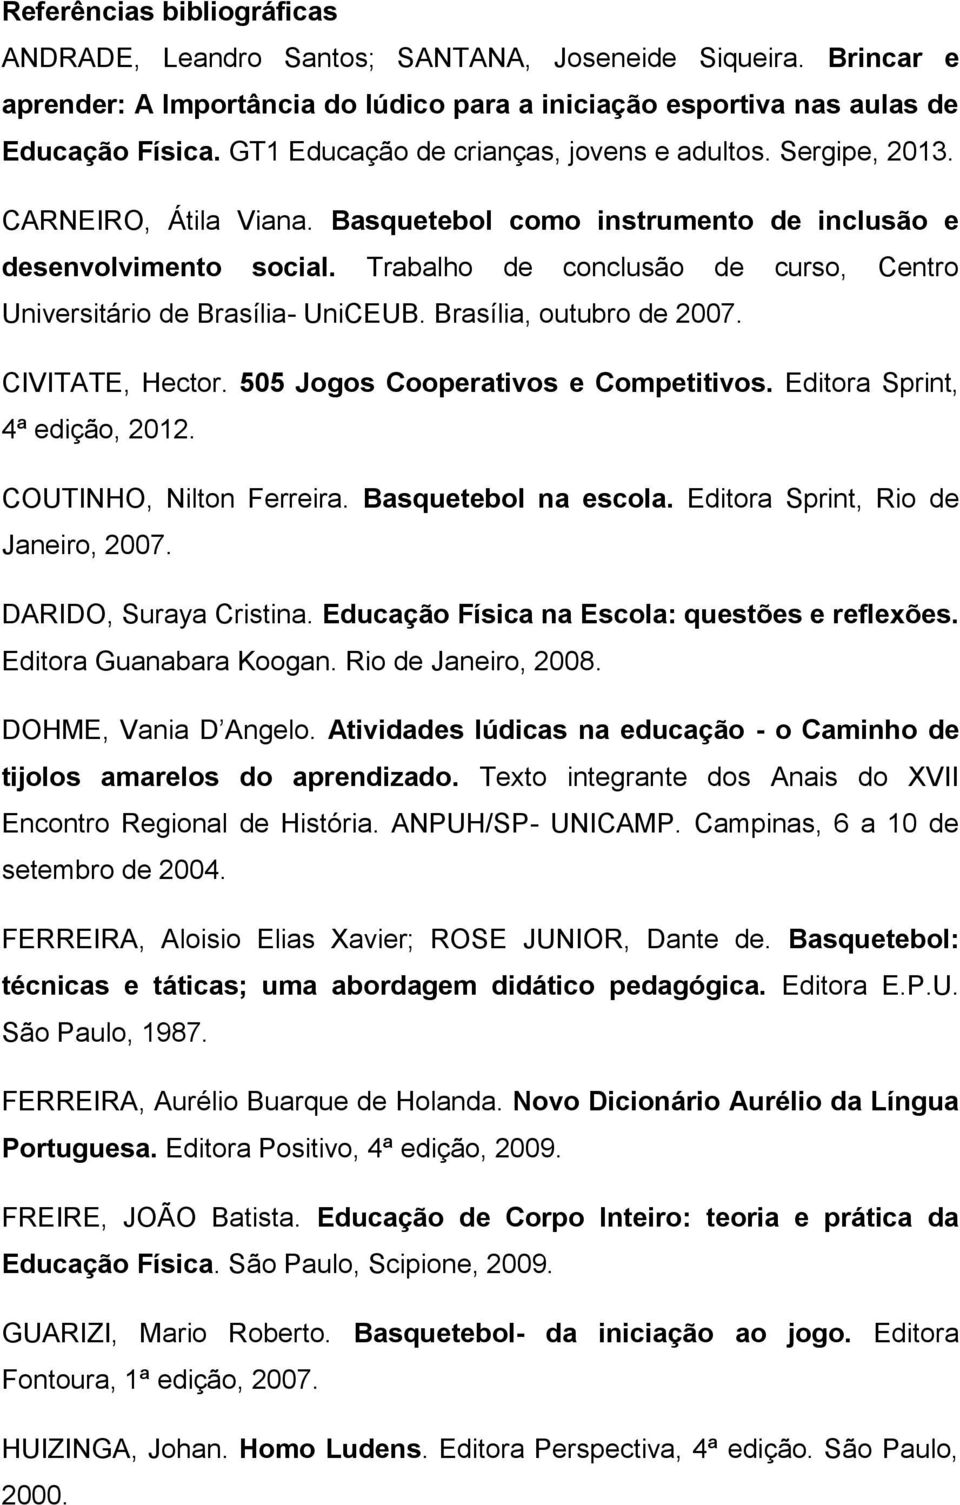 505 Jogos Cooperativos E Competitivos PDF Héctor Civitate